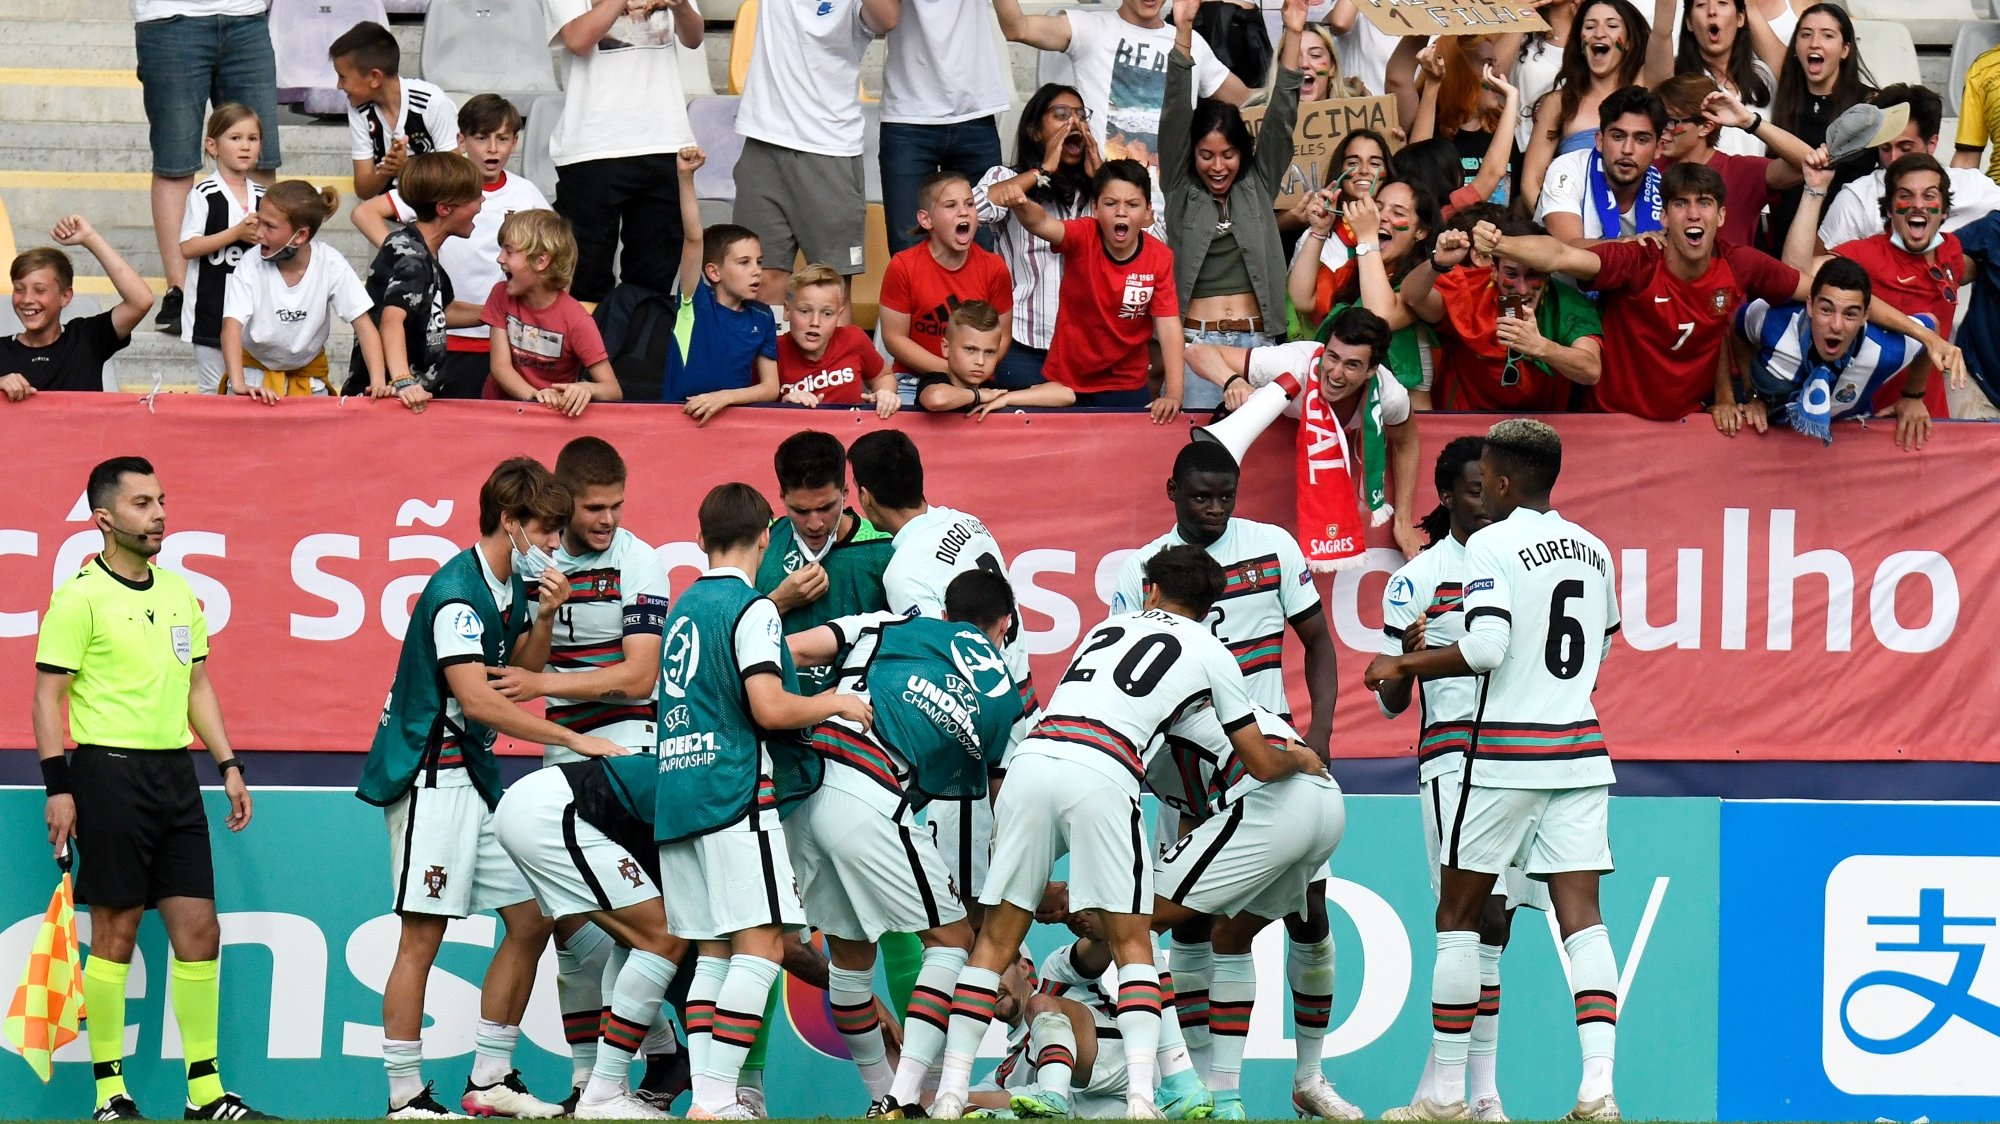 Portugal beneficiou de um autogolo de Cuenca para chegar à terceira final do Europeu Sub-21 e festejar com os muitos adeptos nas bancadas